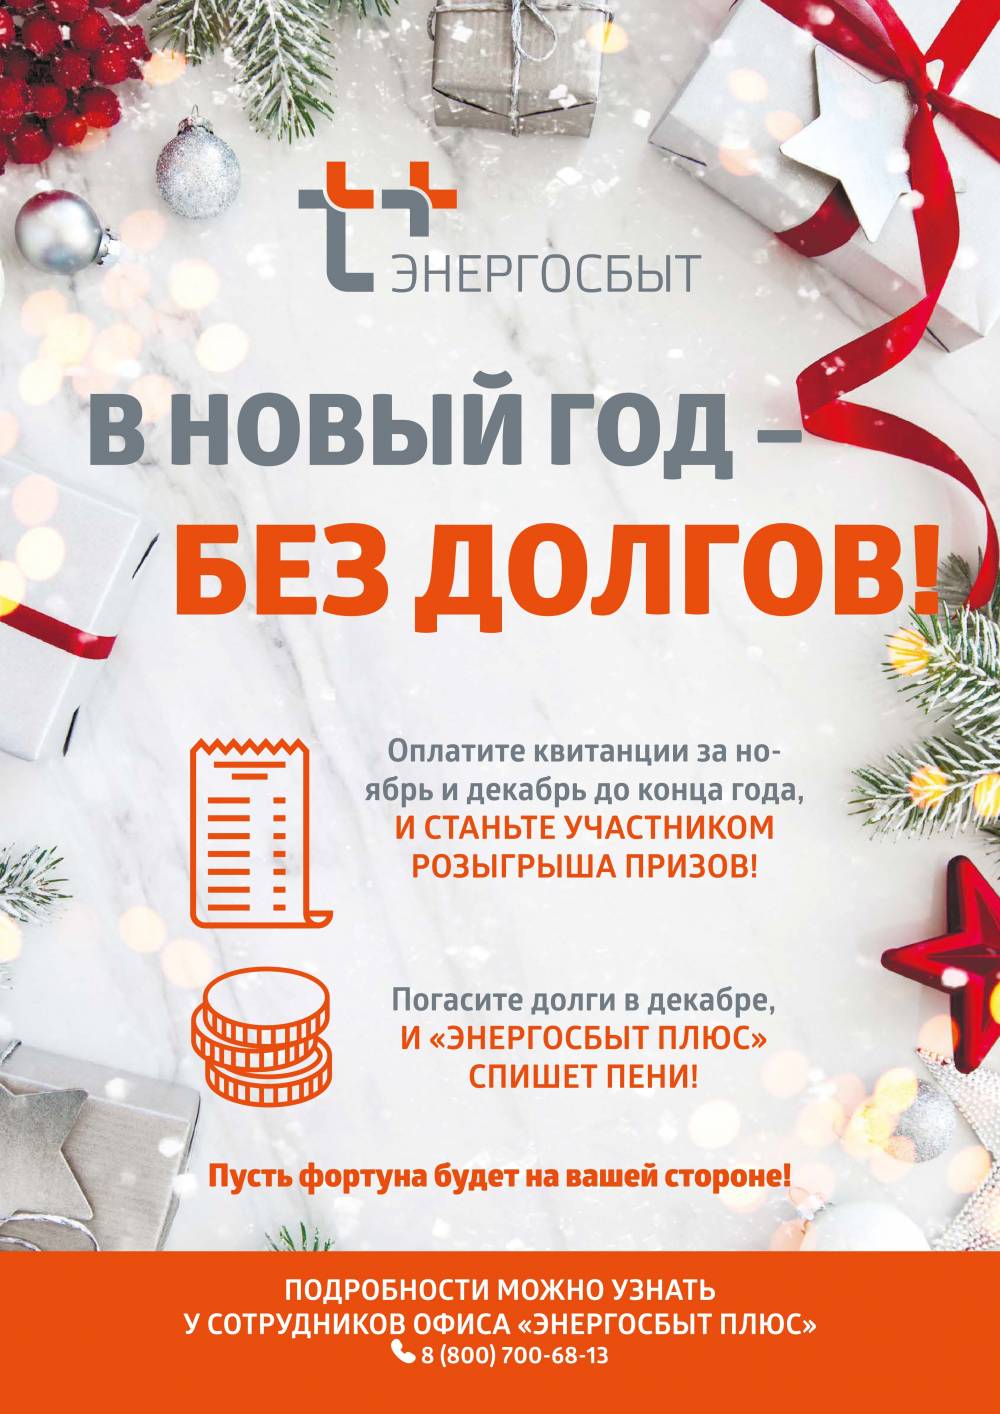 ​В Пермском крае стартует акция теплоэнергетиков «В Новый год – без долгов!»